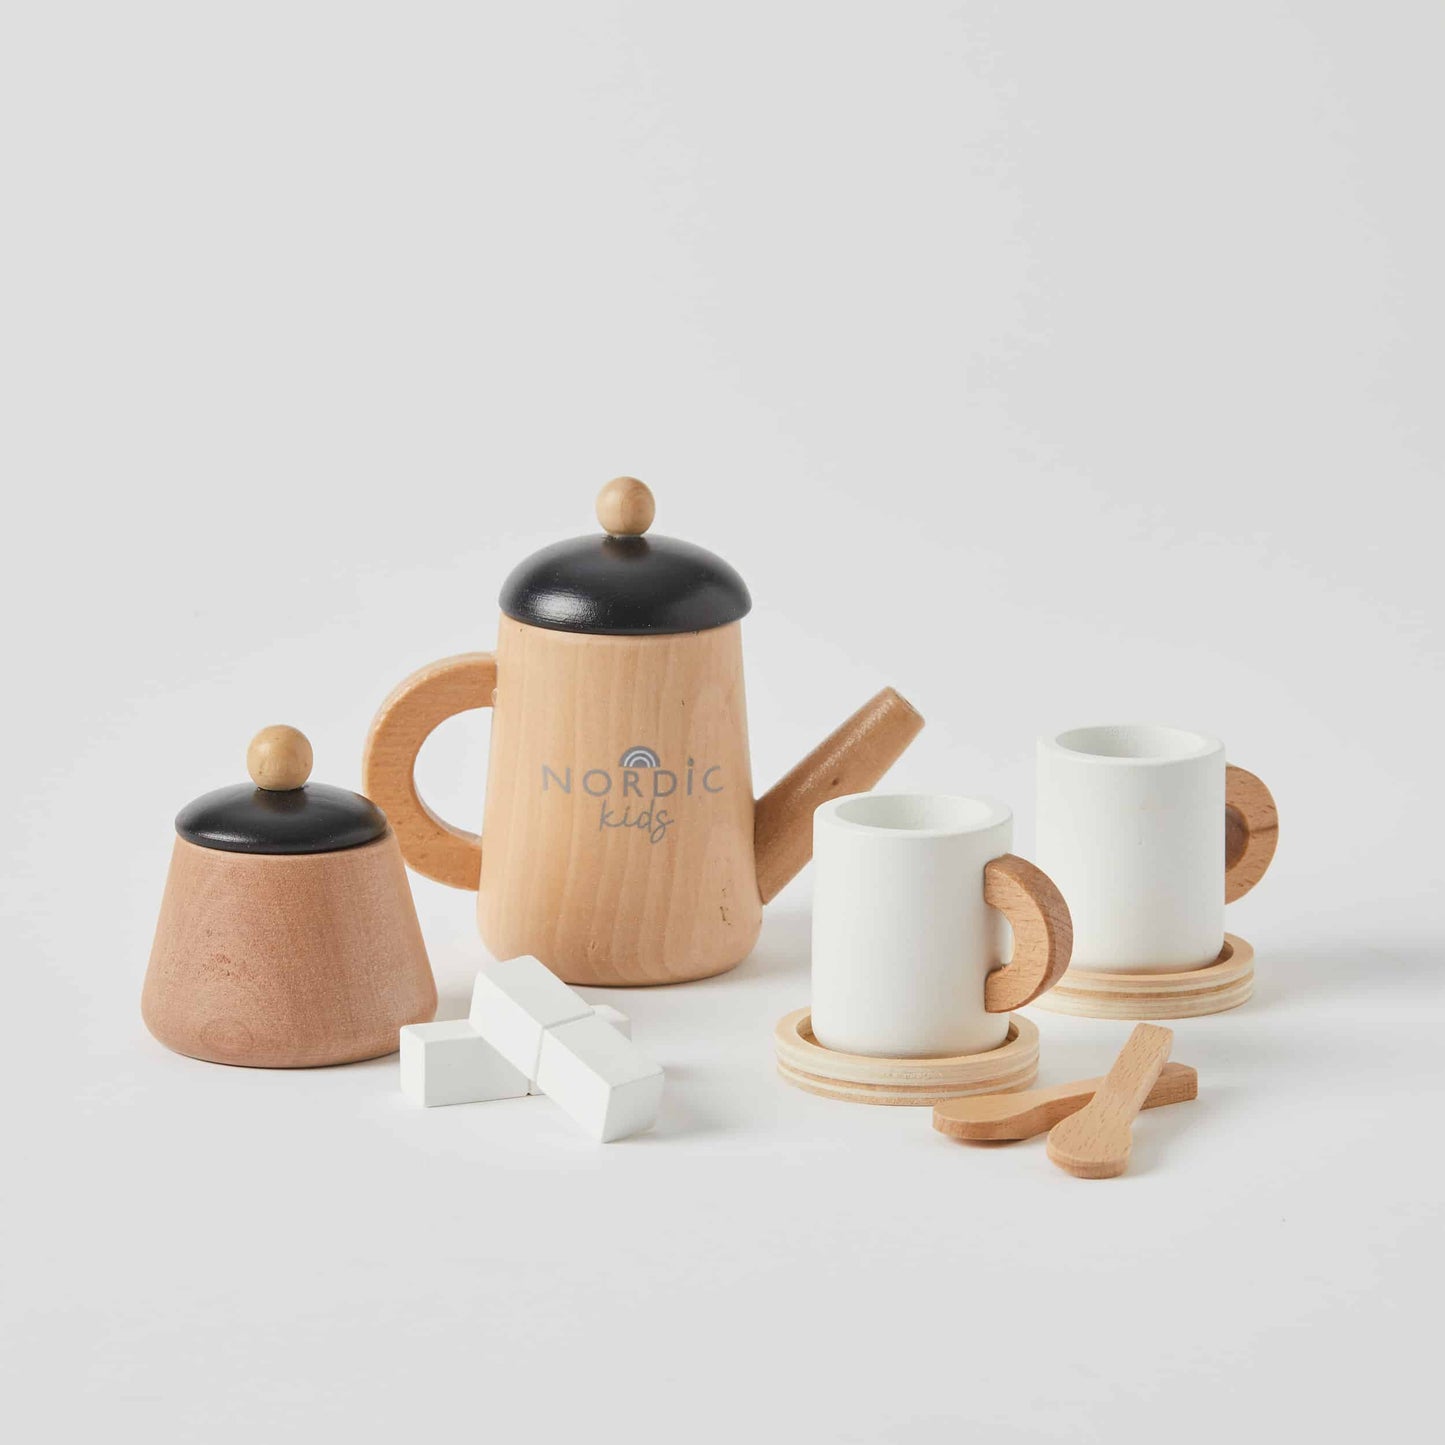 Nordic Kids Wooden Tea Set